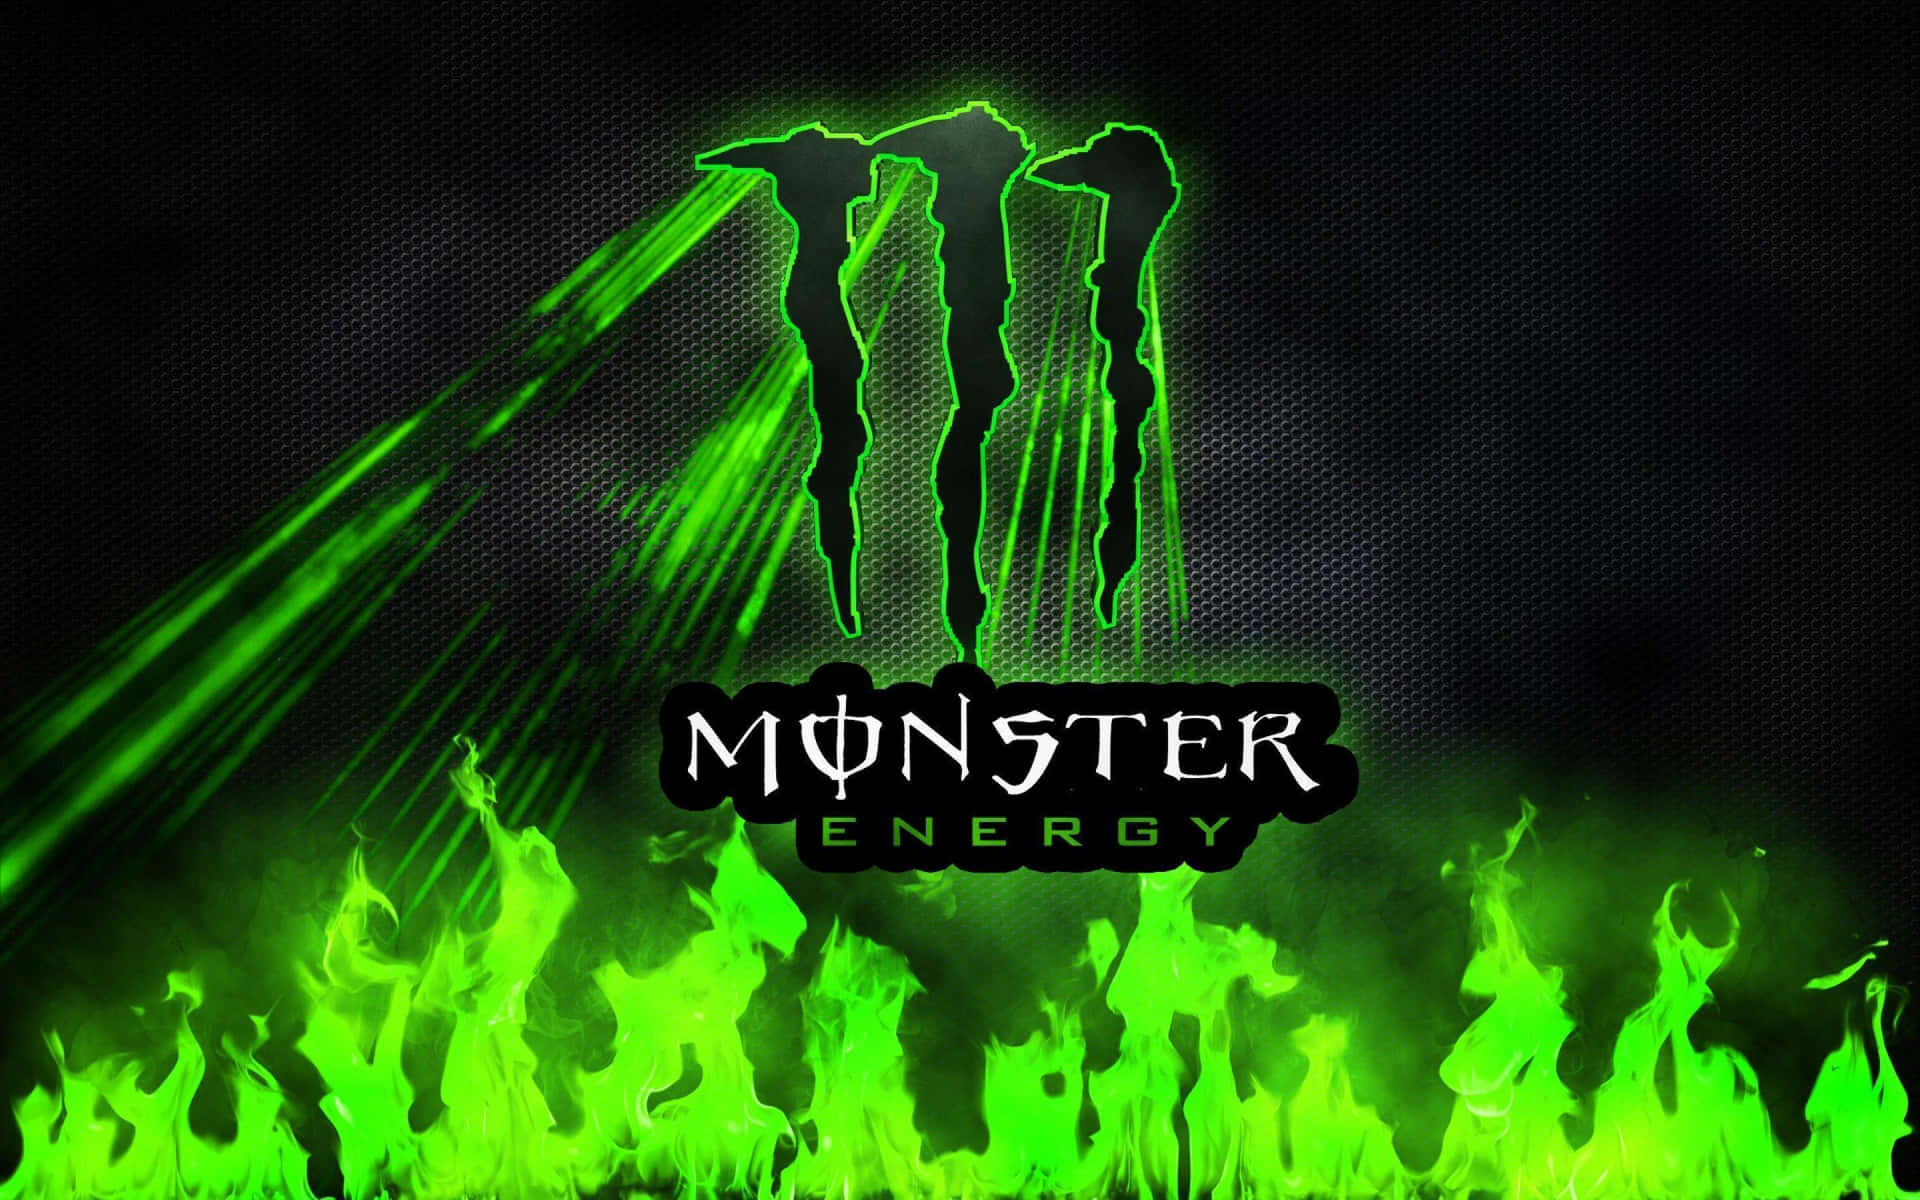 Logode Monster Energy En Un Fondo Oscuro